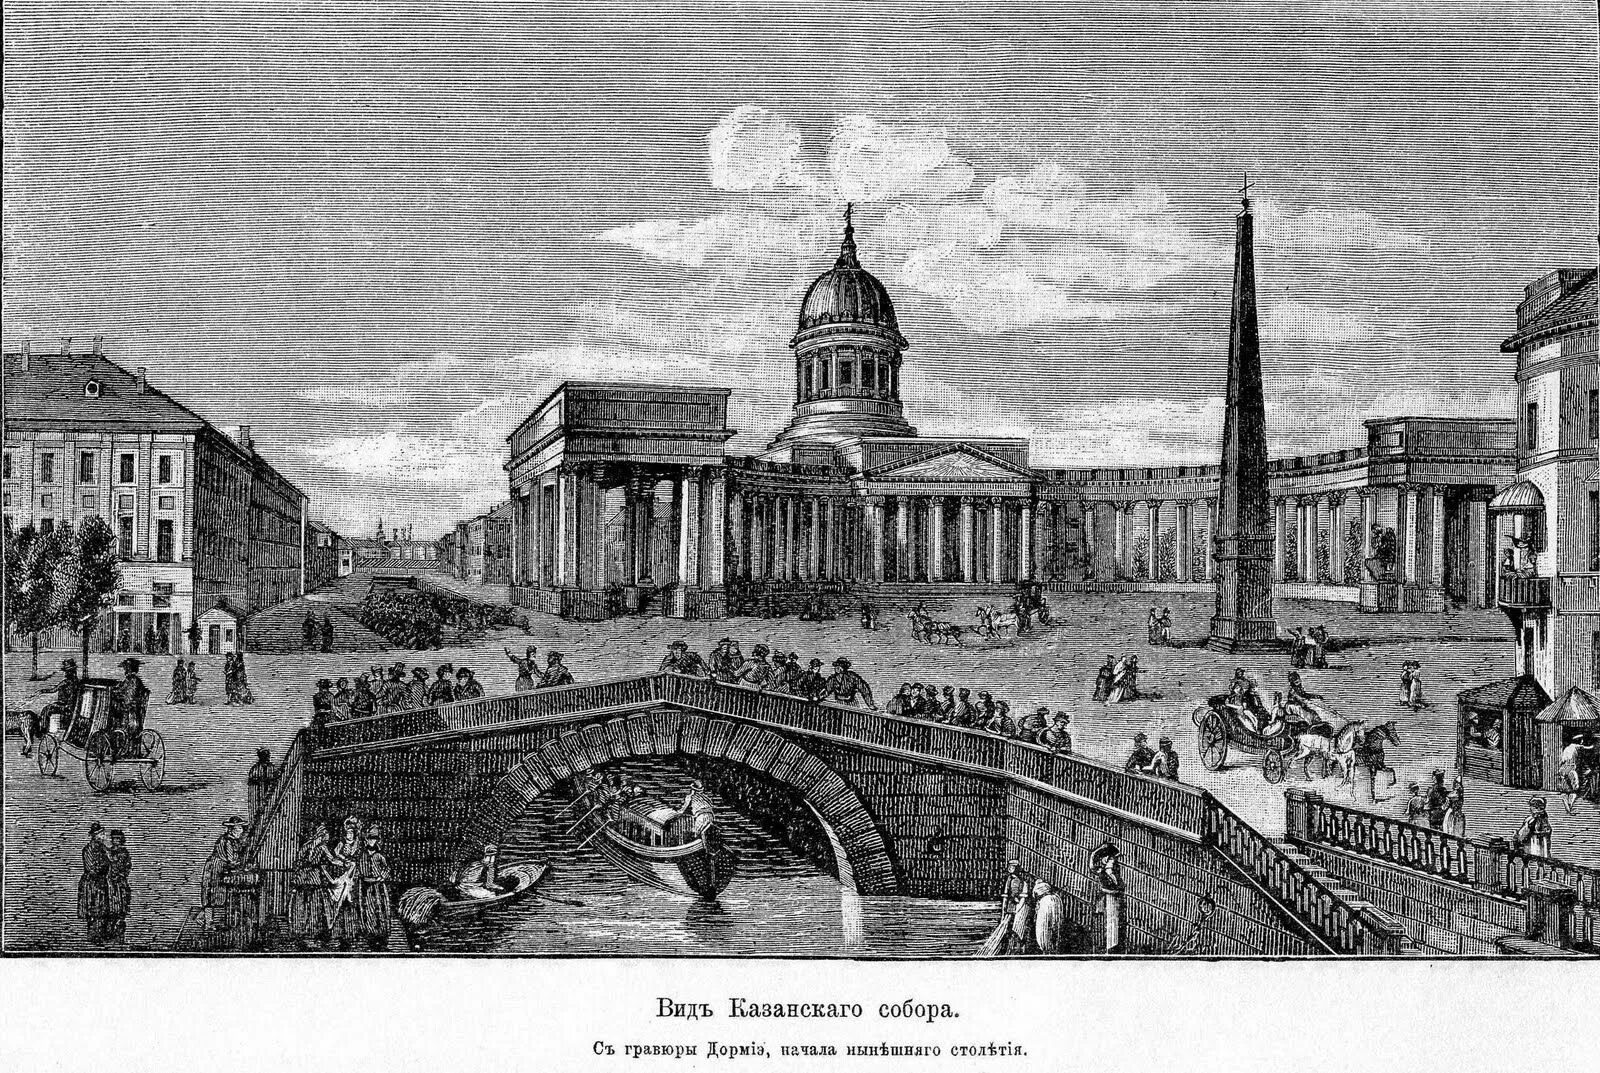 Санкт петербург в начале 18 века. Санкт-Петербург гравюра 18 век. Санкт-Петербург 19 век гравюра.